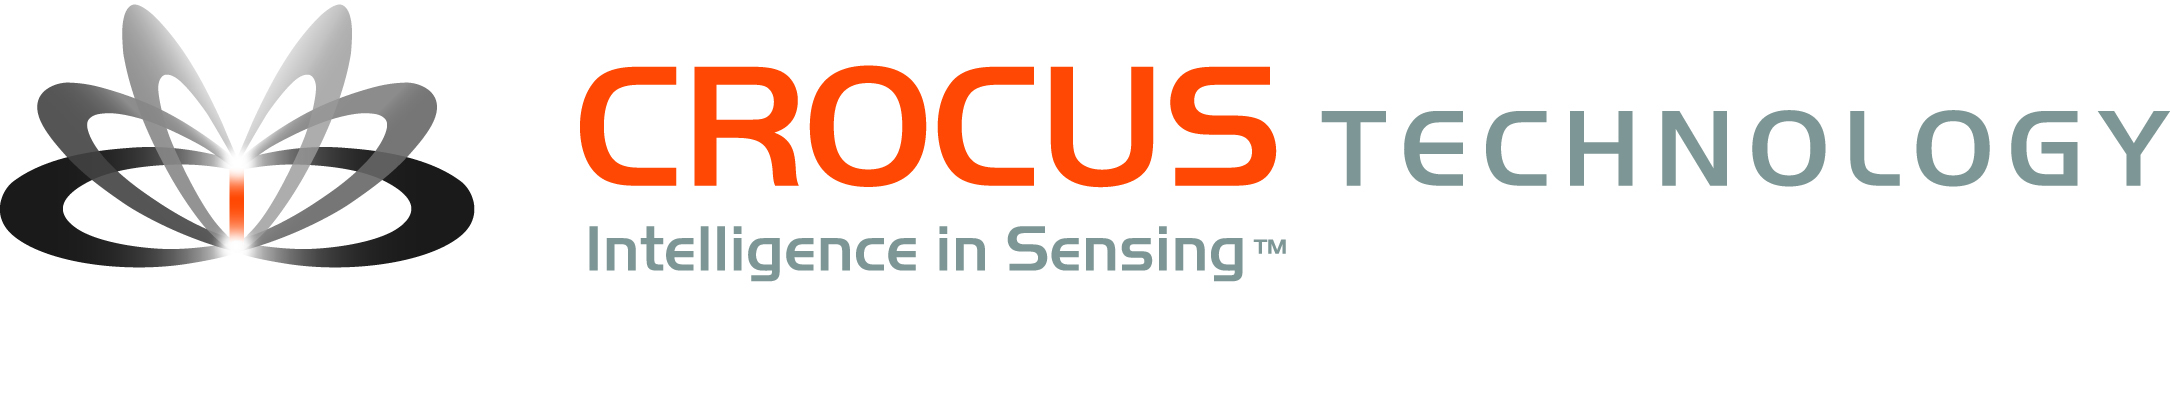 Sensoren_Crocus_Logo_EN